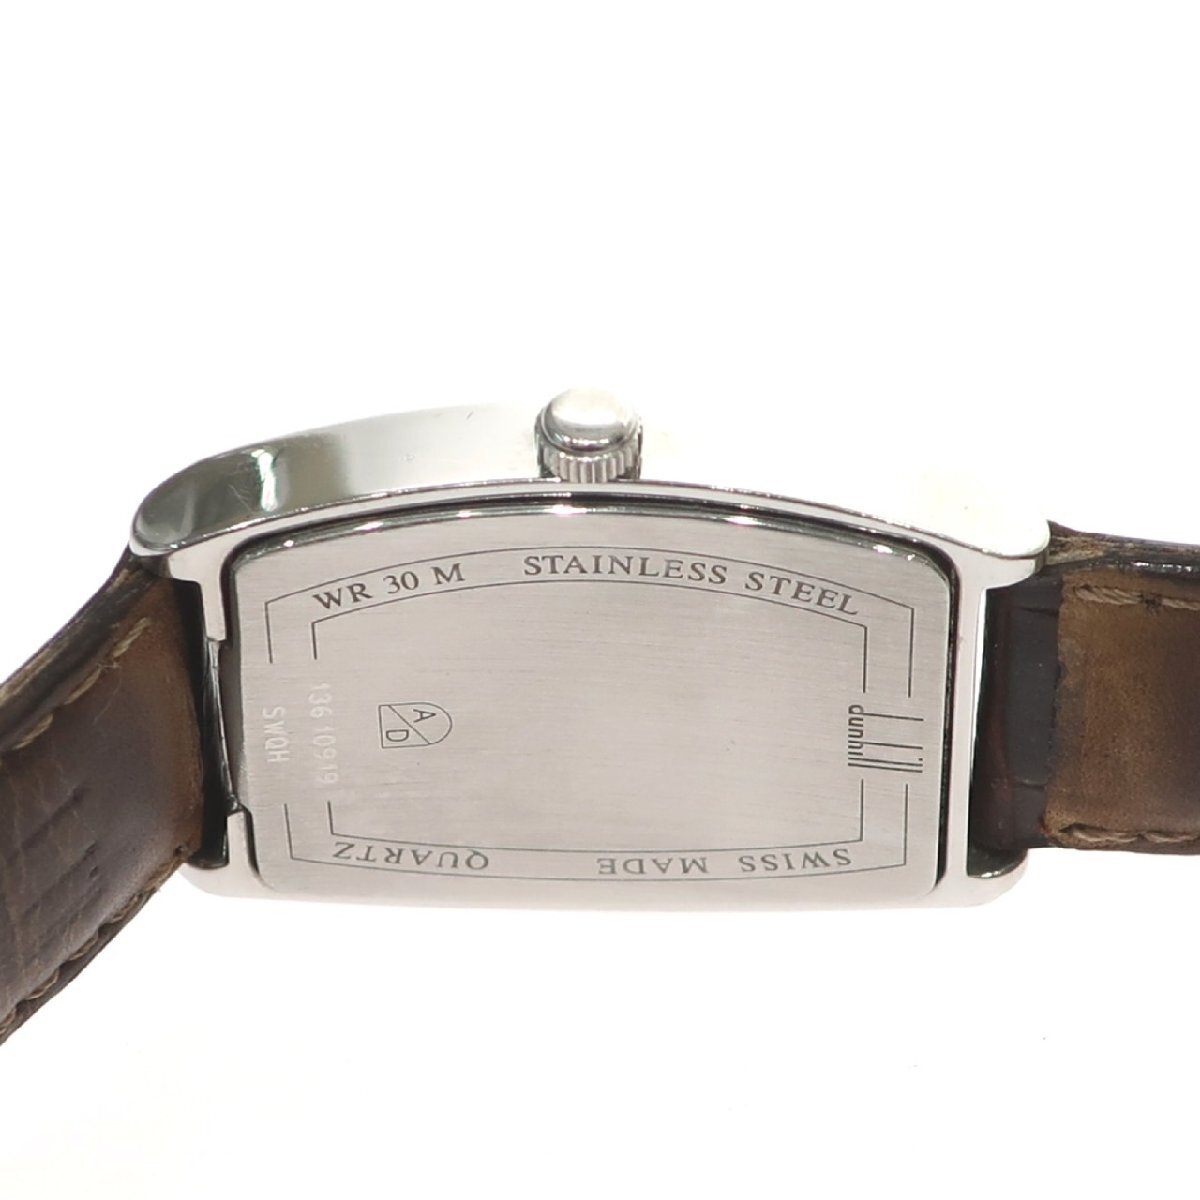 1 иен старт работа товар Dunhill Dunhill мужские наручные часы WR30M Date кварц QZ квадратное 3 стрелки кожа ремень серебряный SS слоновая кость циферблат 